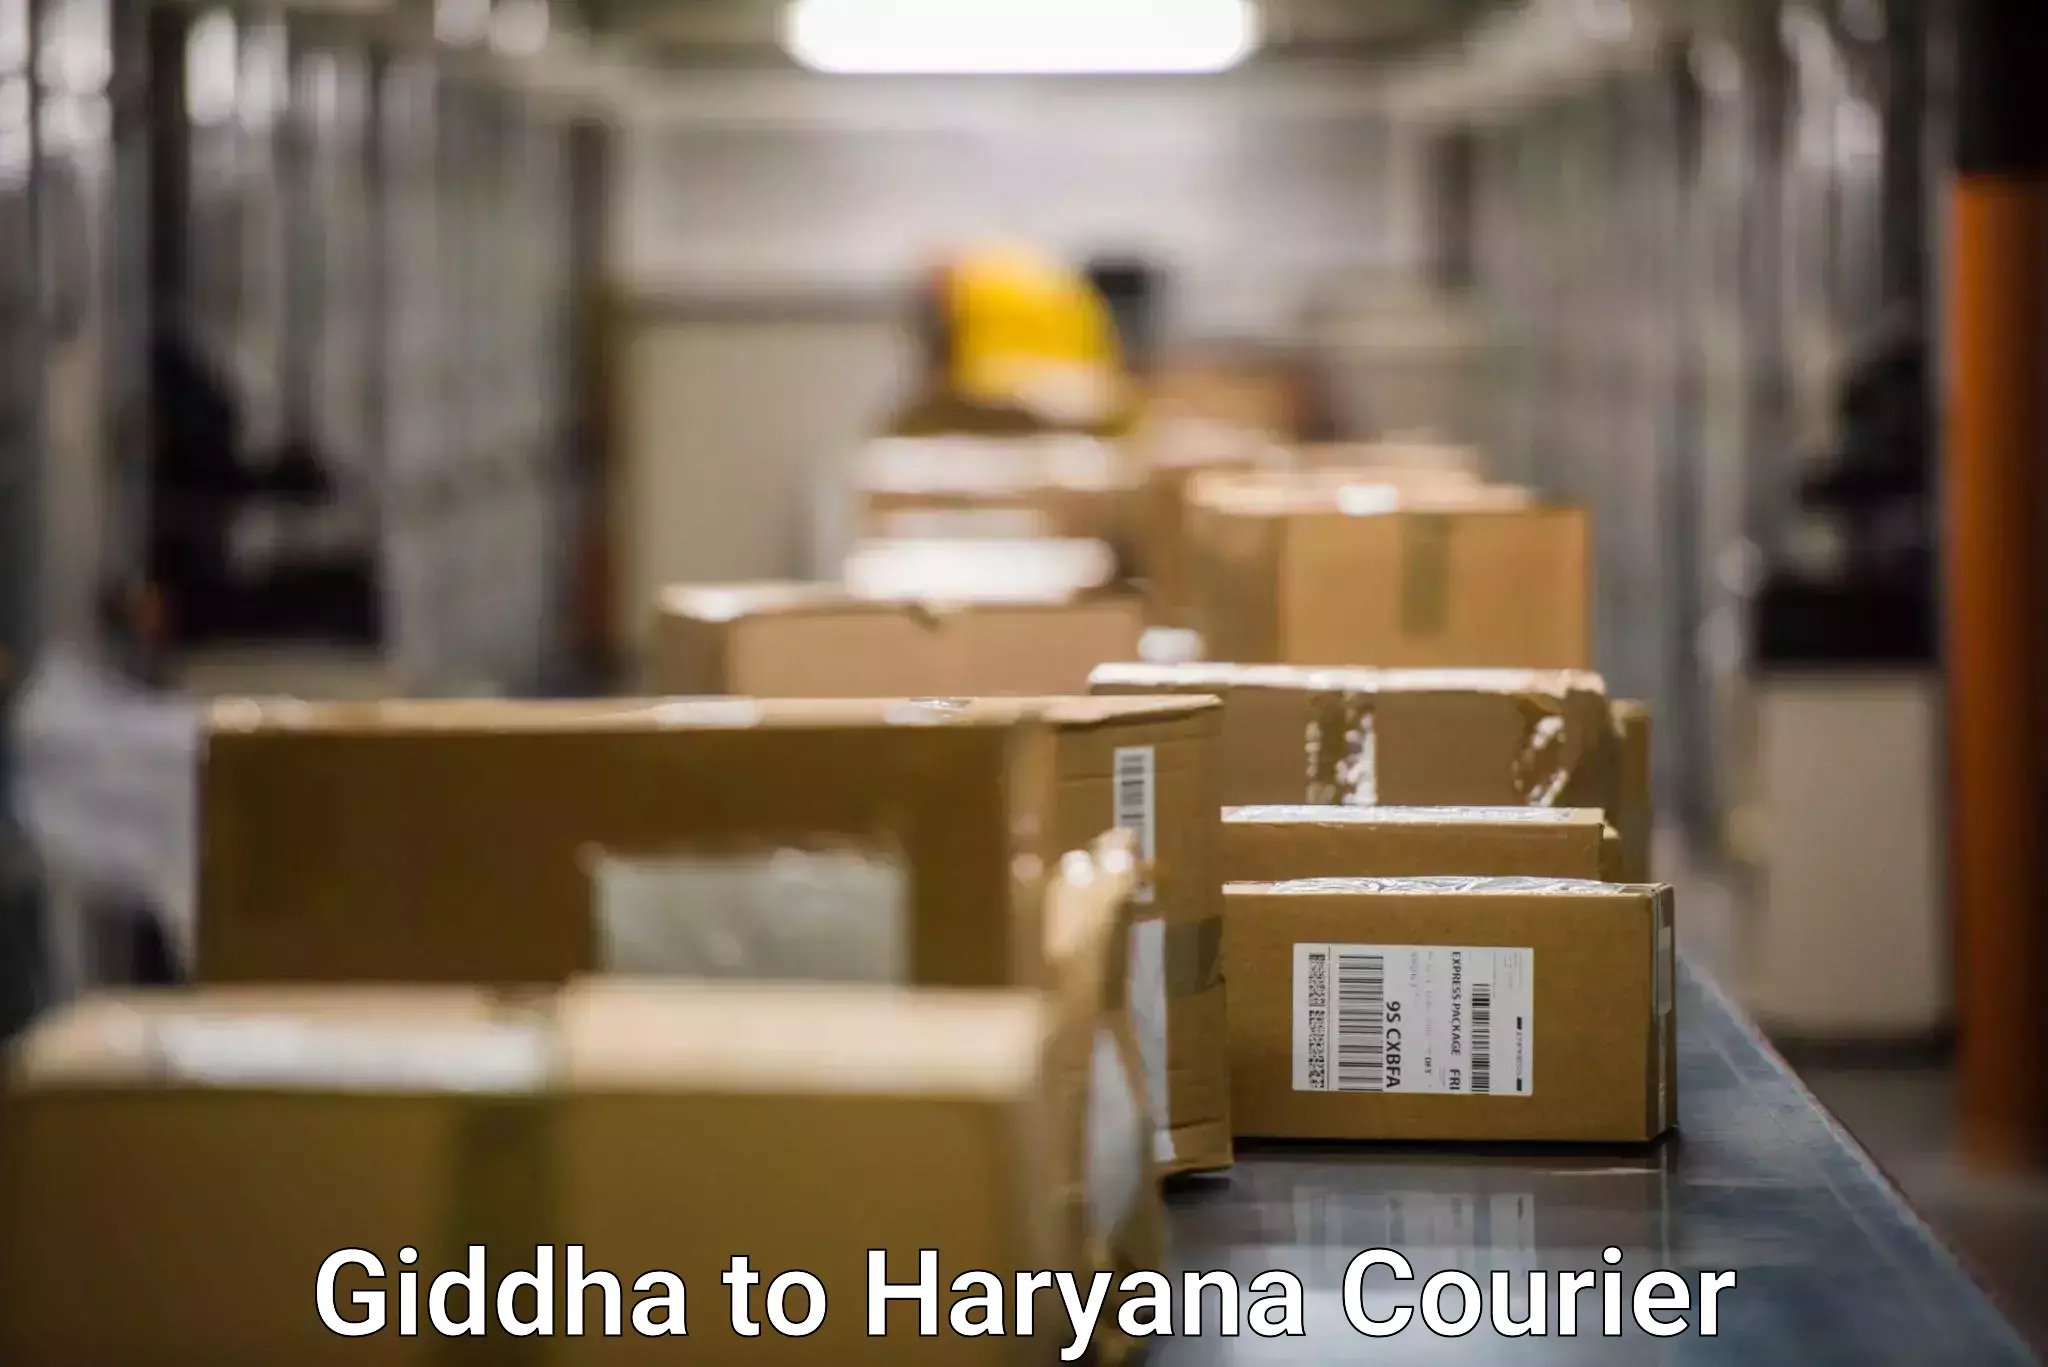 Efficient courier operations Giddha to IIIT Sonepat